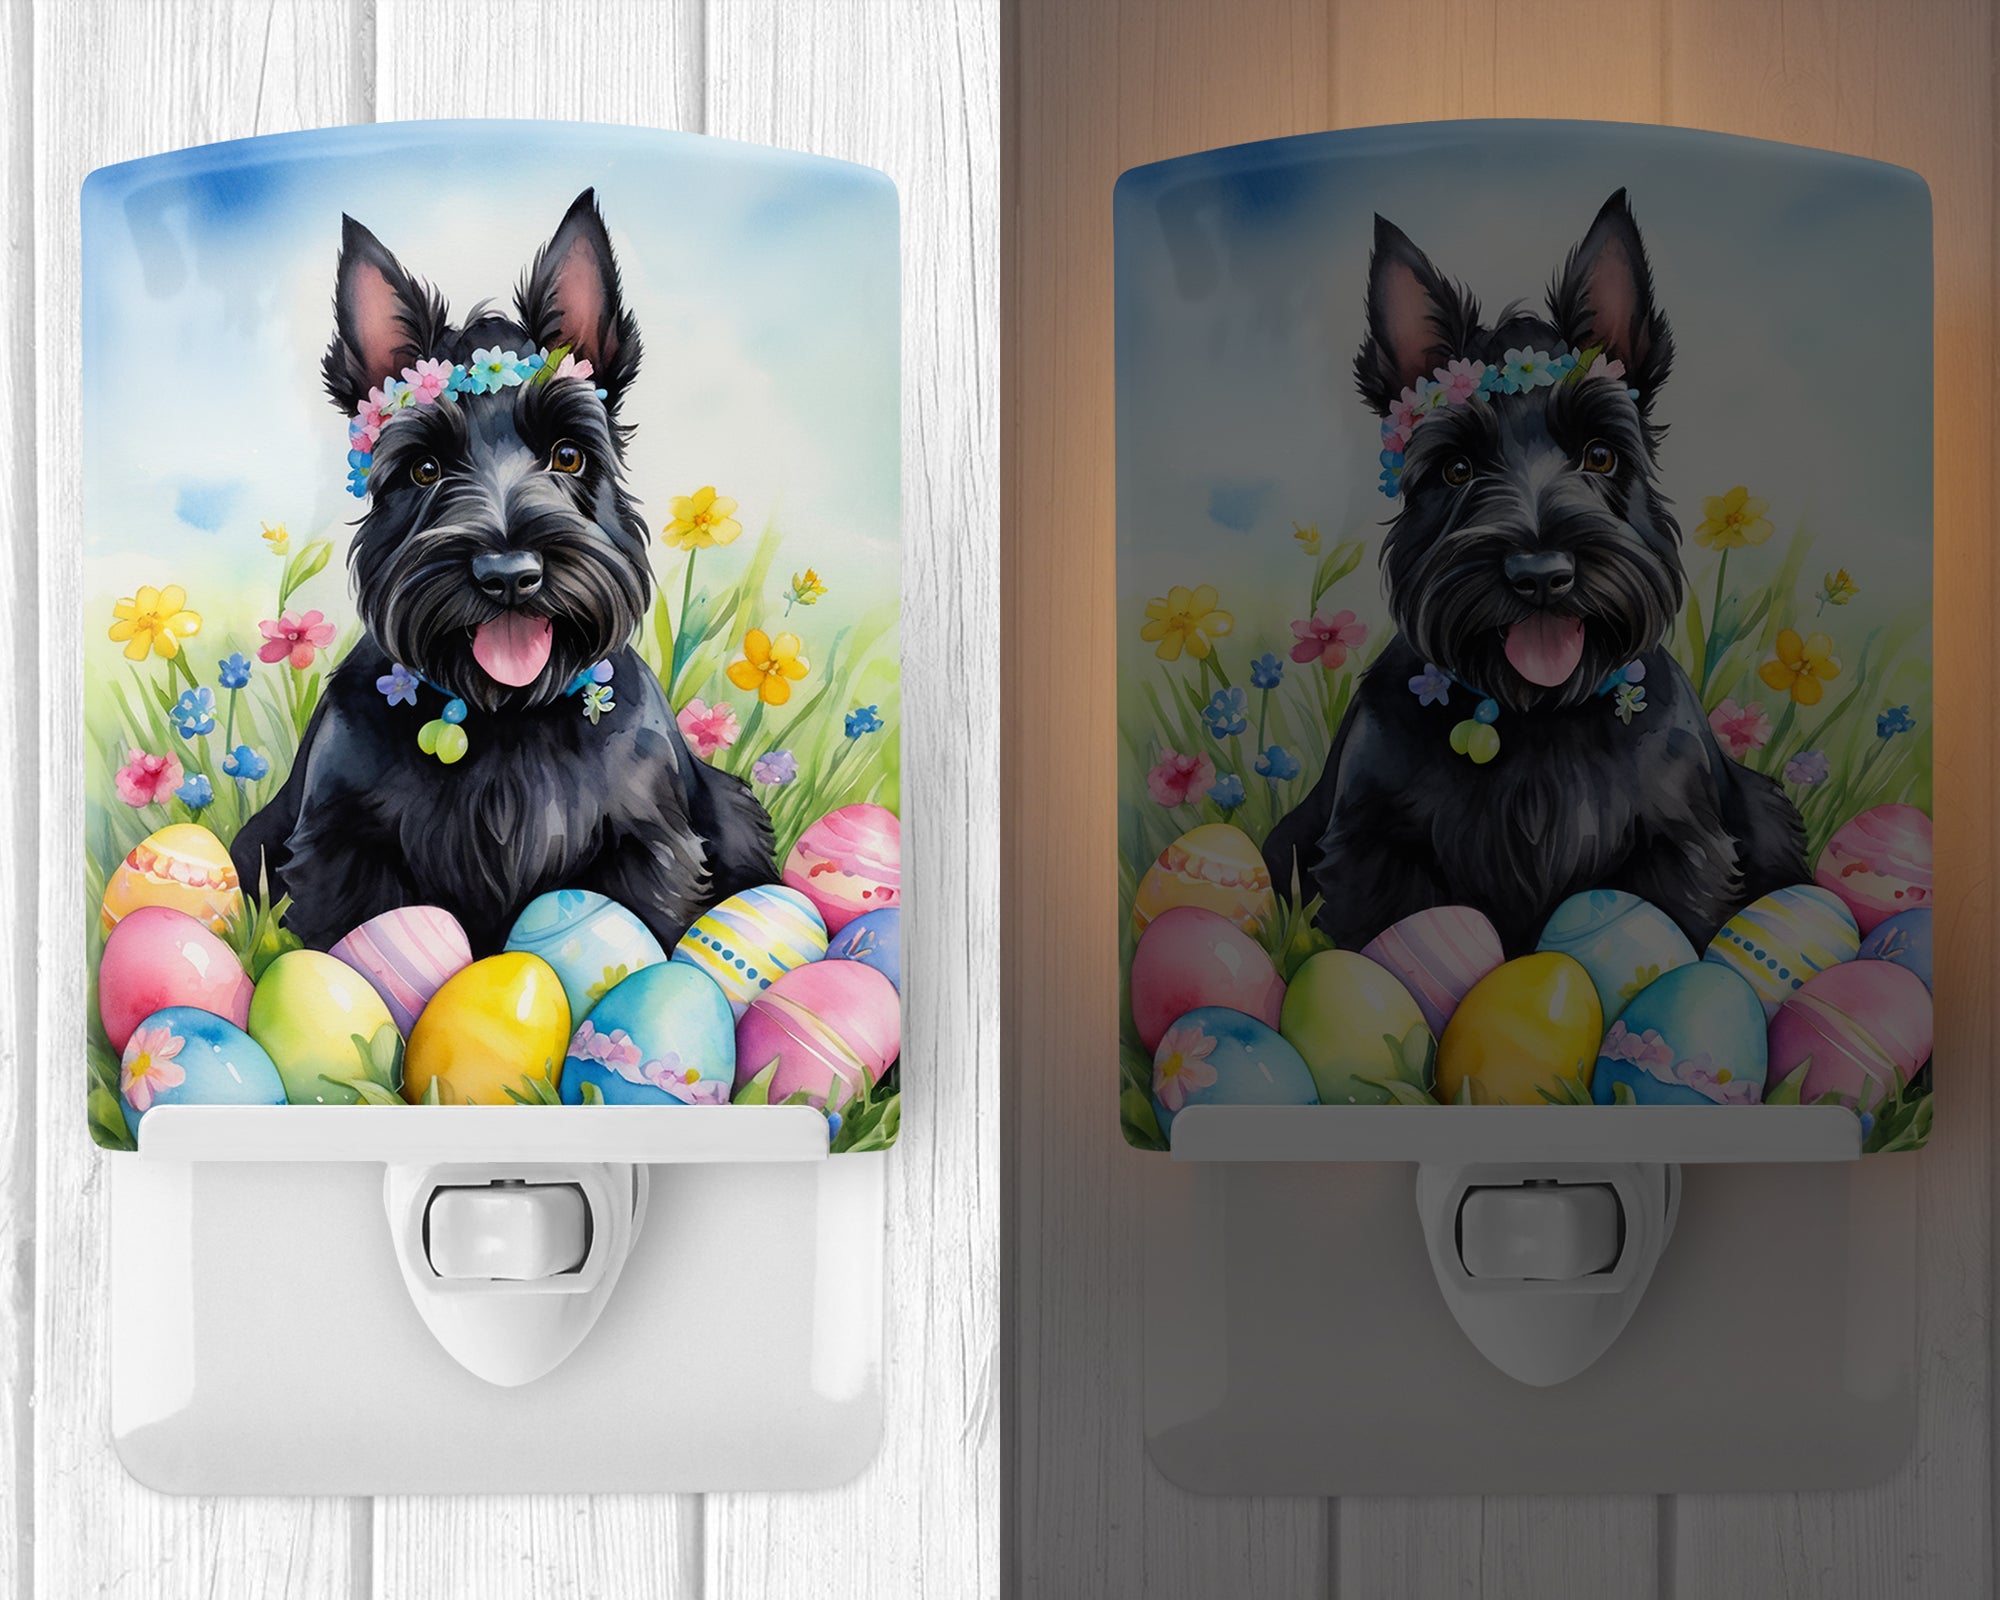 Scottish Terrier Easter Egg Hunt Ceramic Night Light